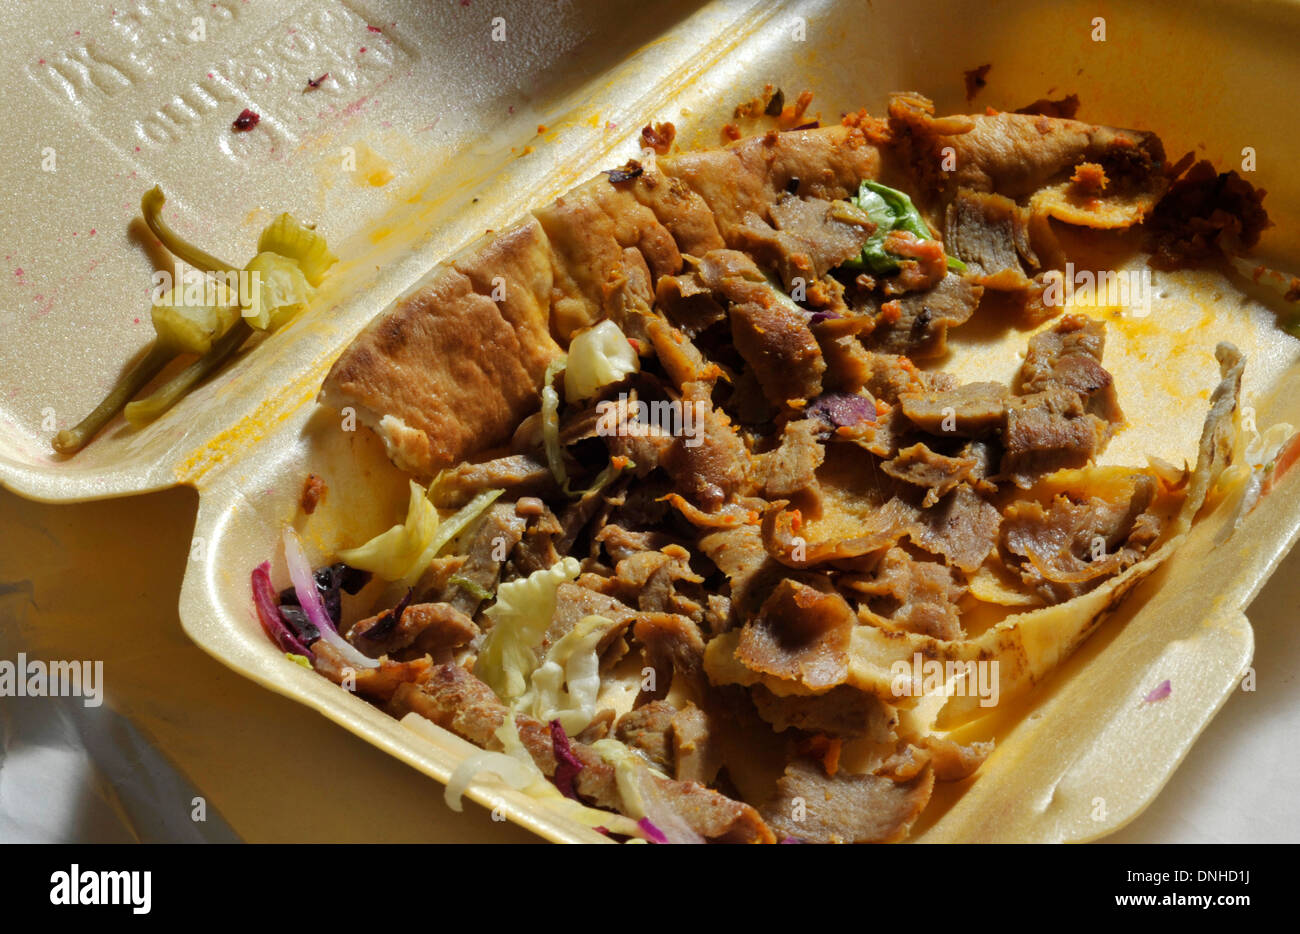 Comida rápida, basura doner kebab sobras de comida para llevar. Foto de stock